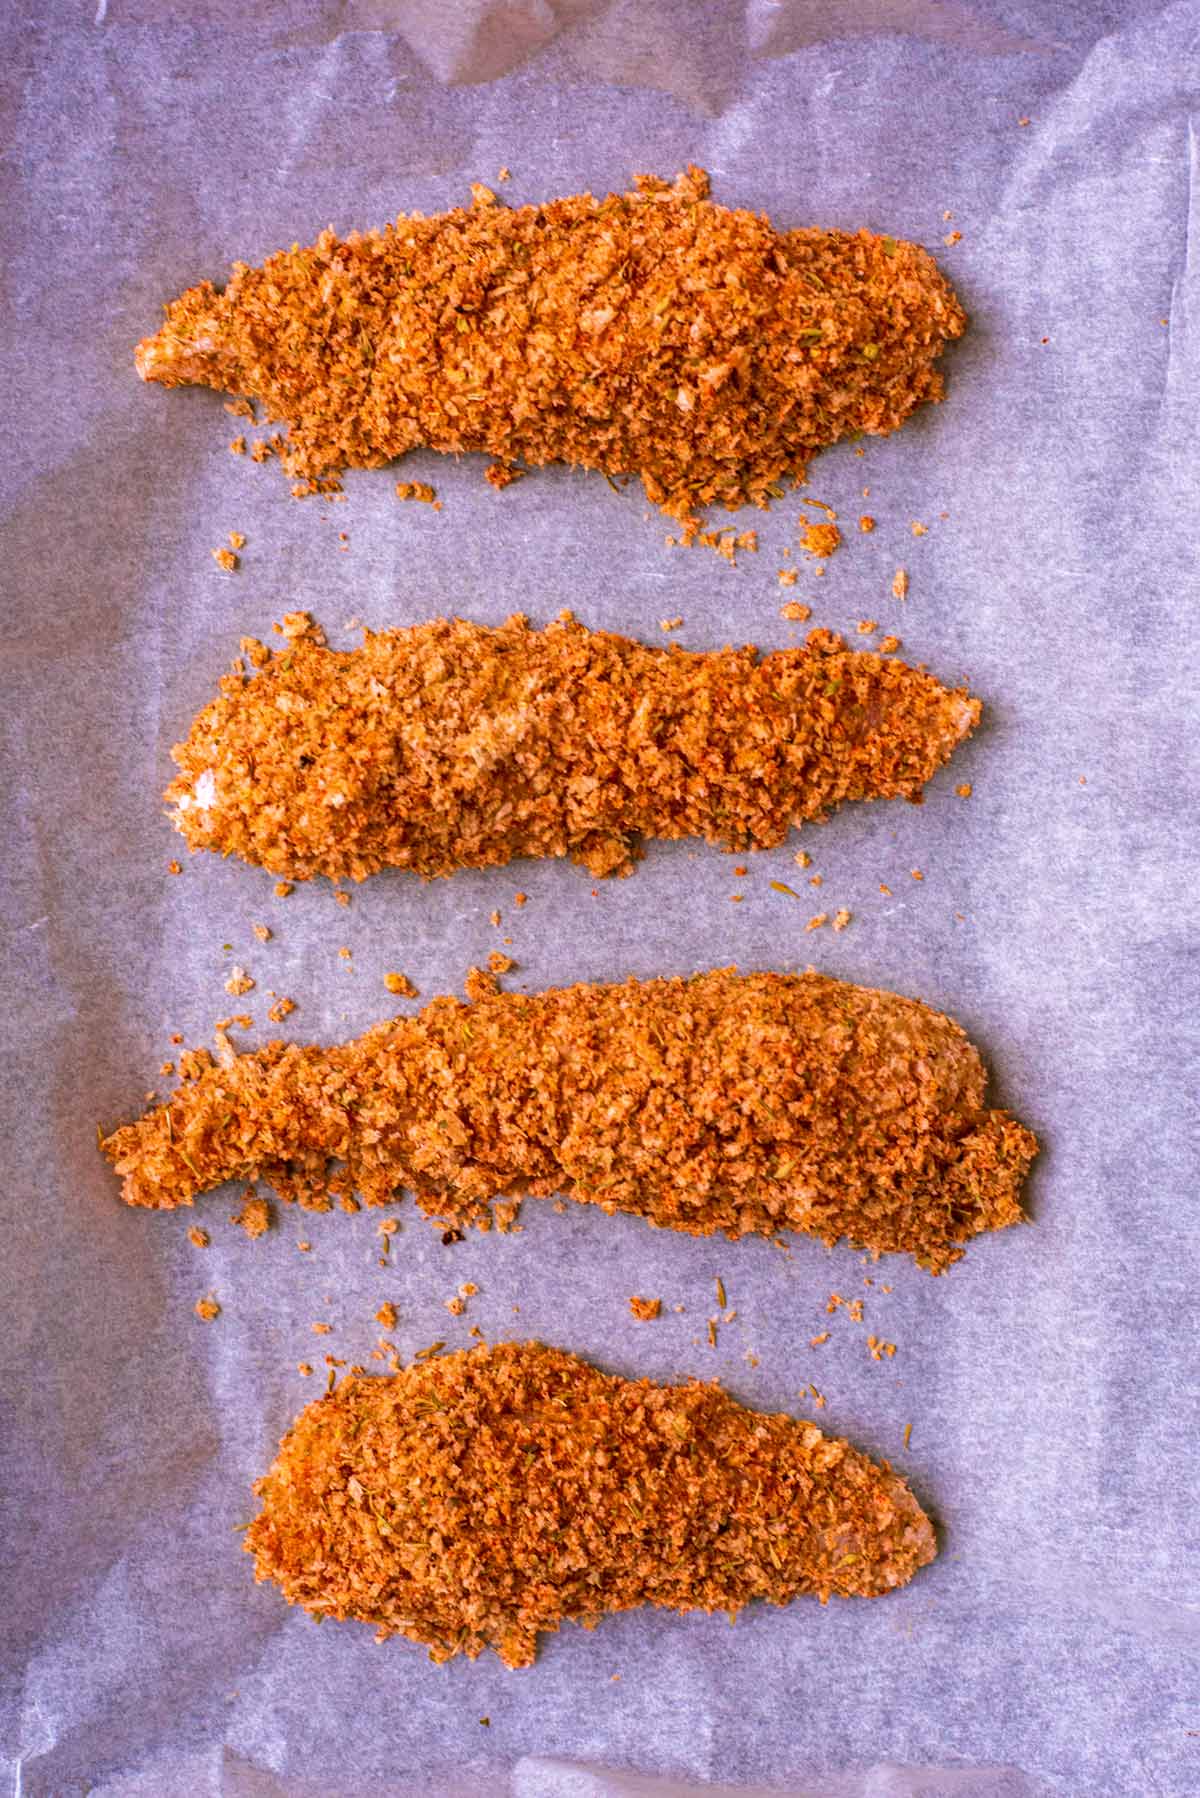 Long chicken strips, coated in seasoned breadcrumbs, arranged in a row on a baking sheet.